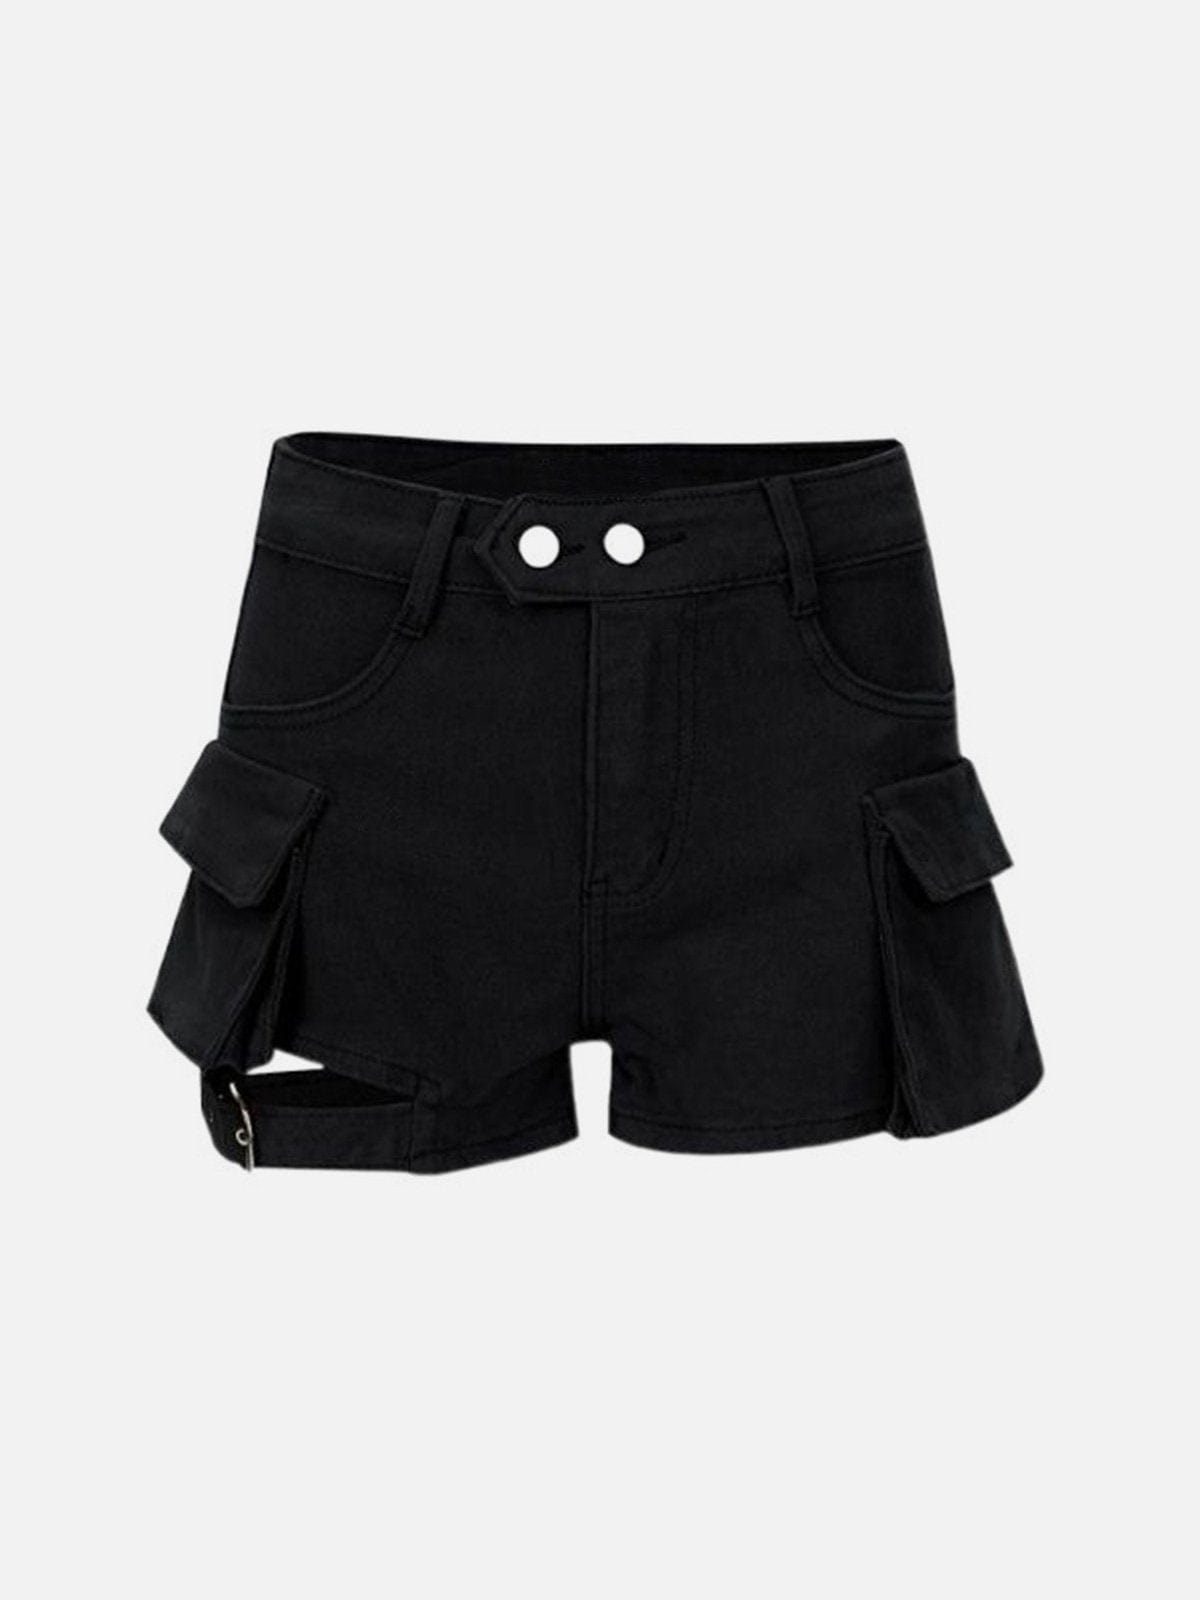 NEV Multi-Pocket Strappy Shorts